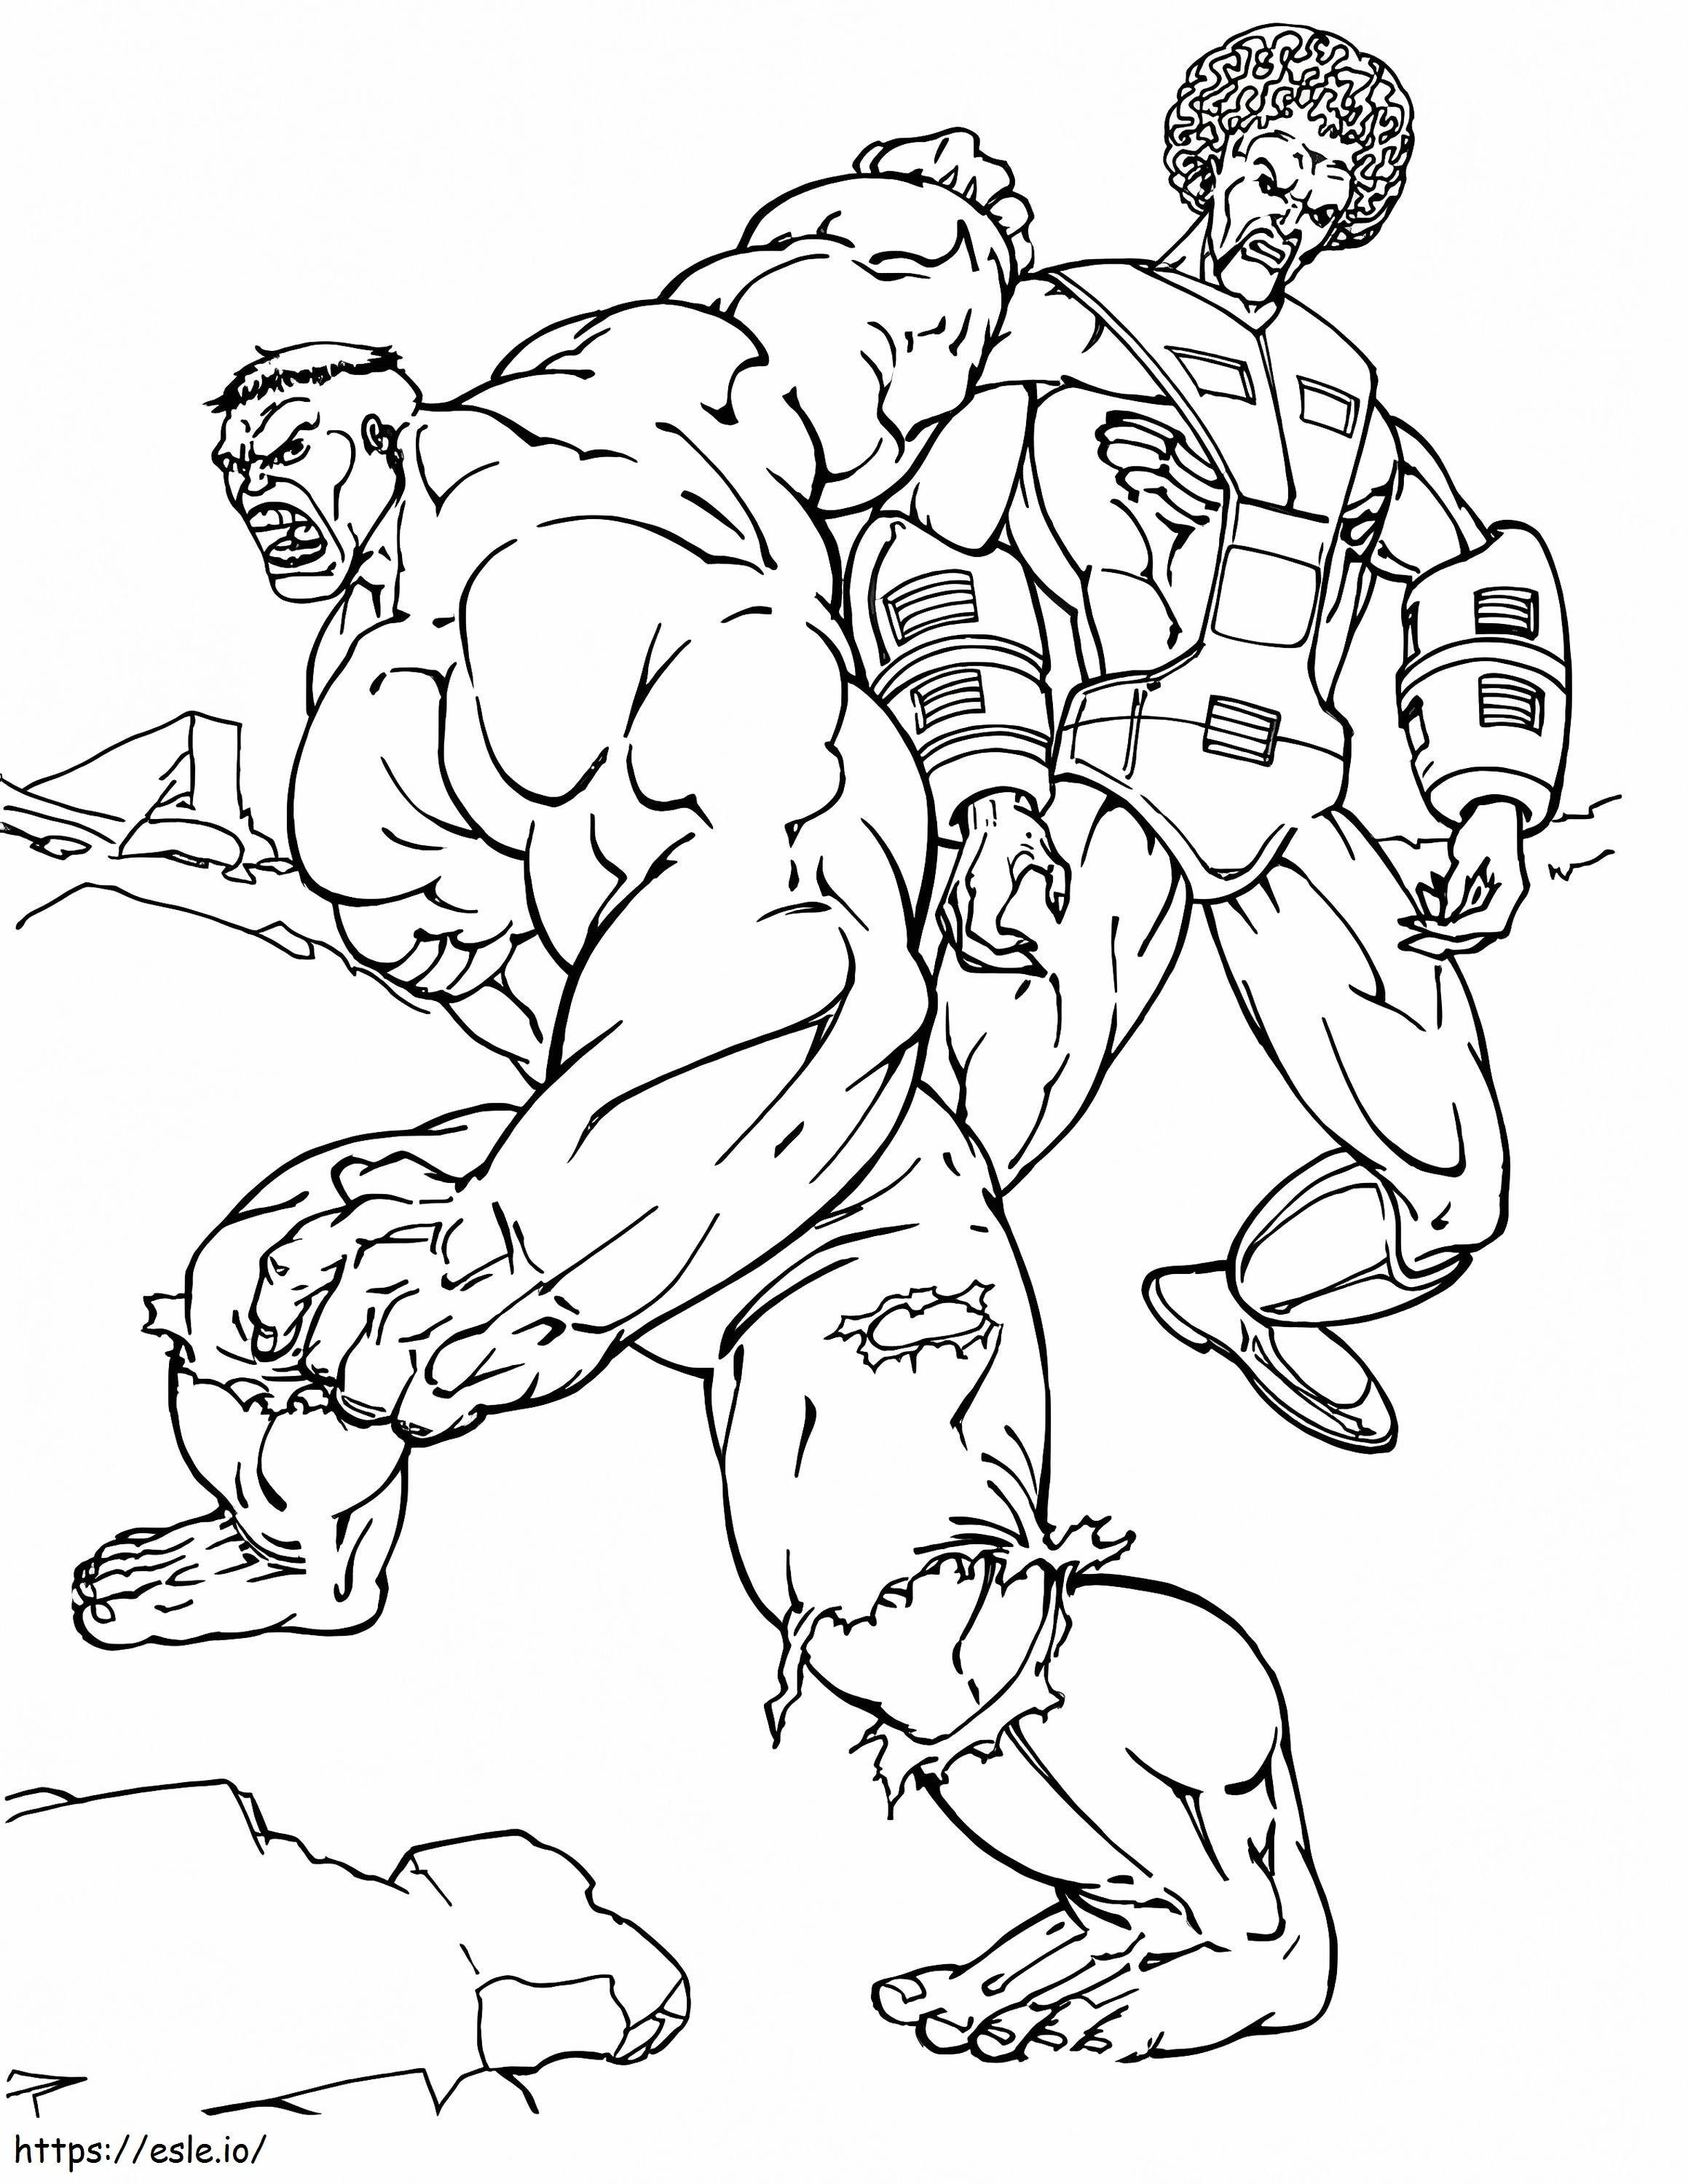 Hulk și răufăcător de colorat